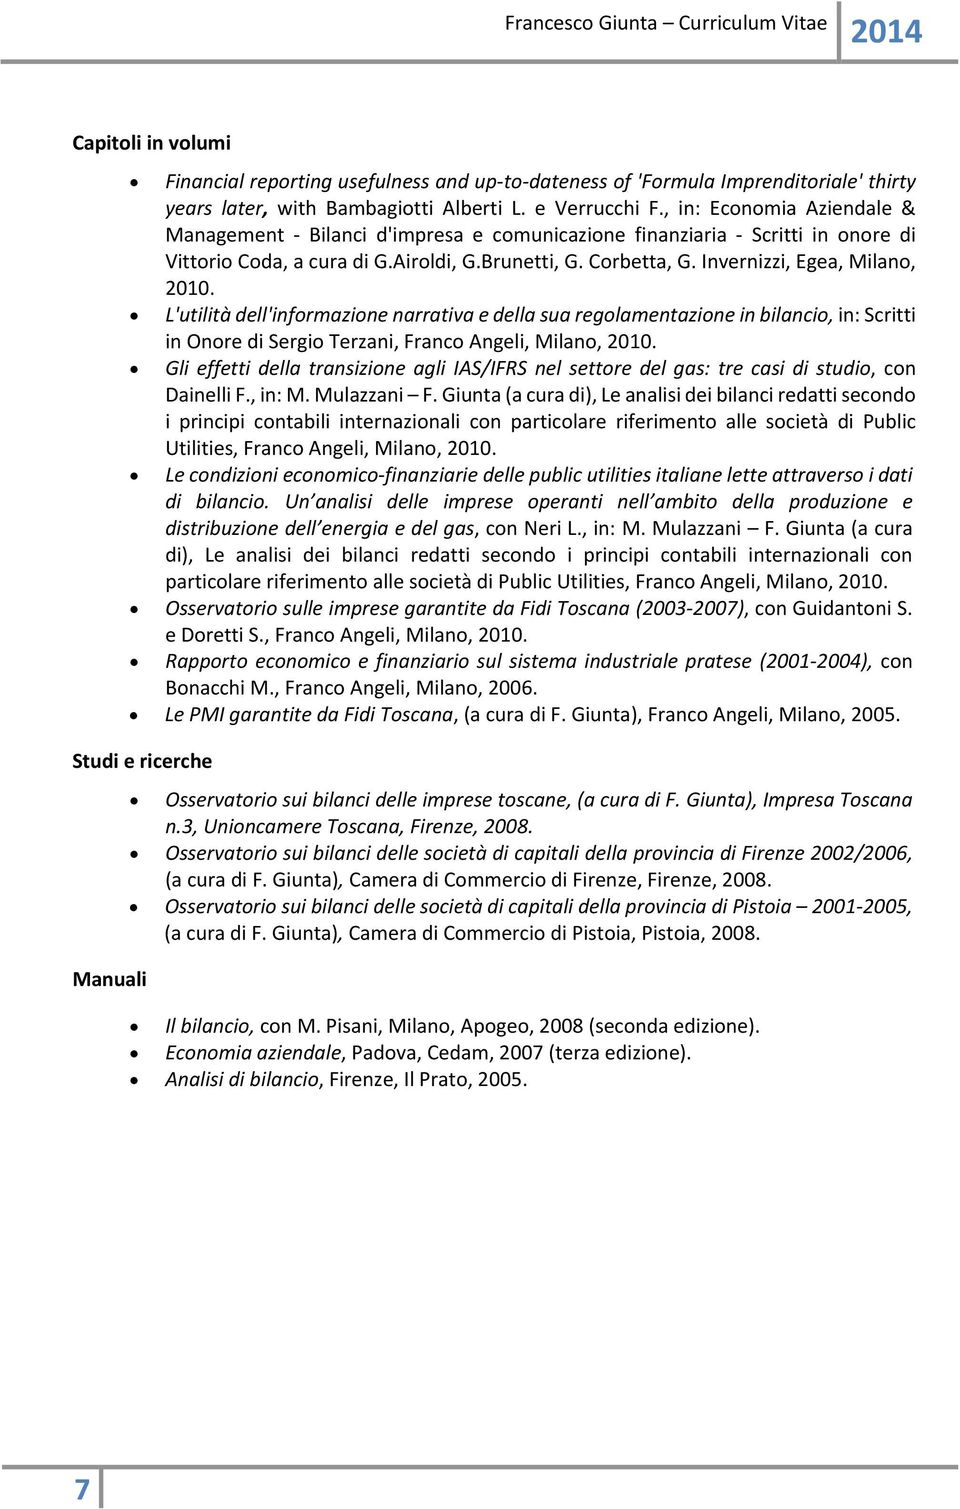 L'utilità dell'informazione narrativa e della sua regolamentazione in bilancio, in: Scritti in Onore di Sergio Terzani, Franco Angeli, Milano, 2010.